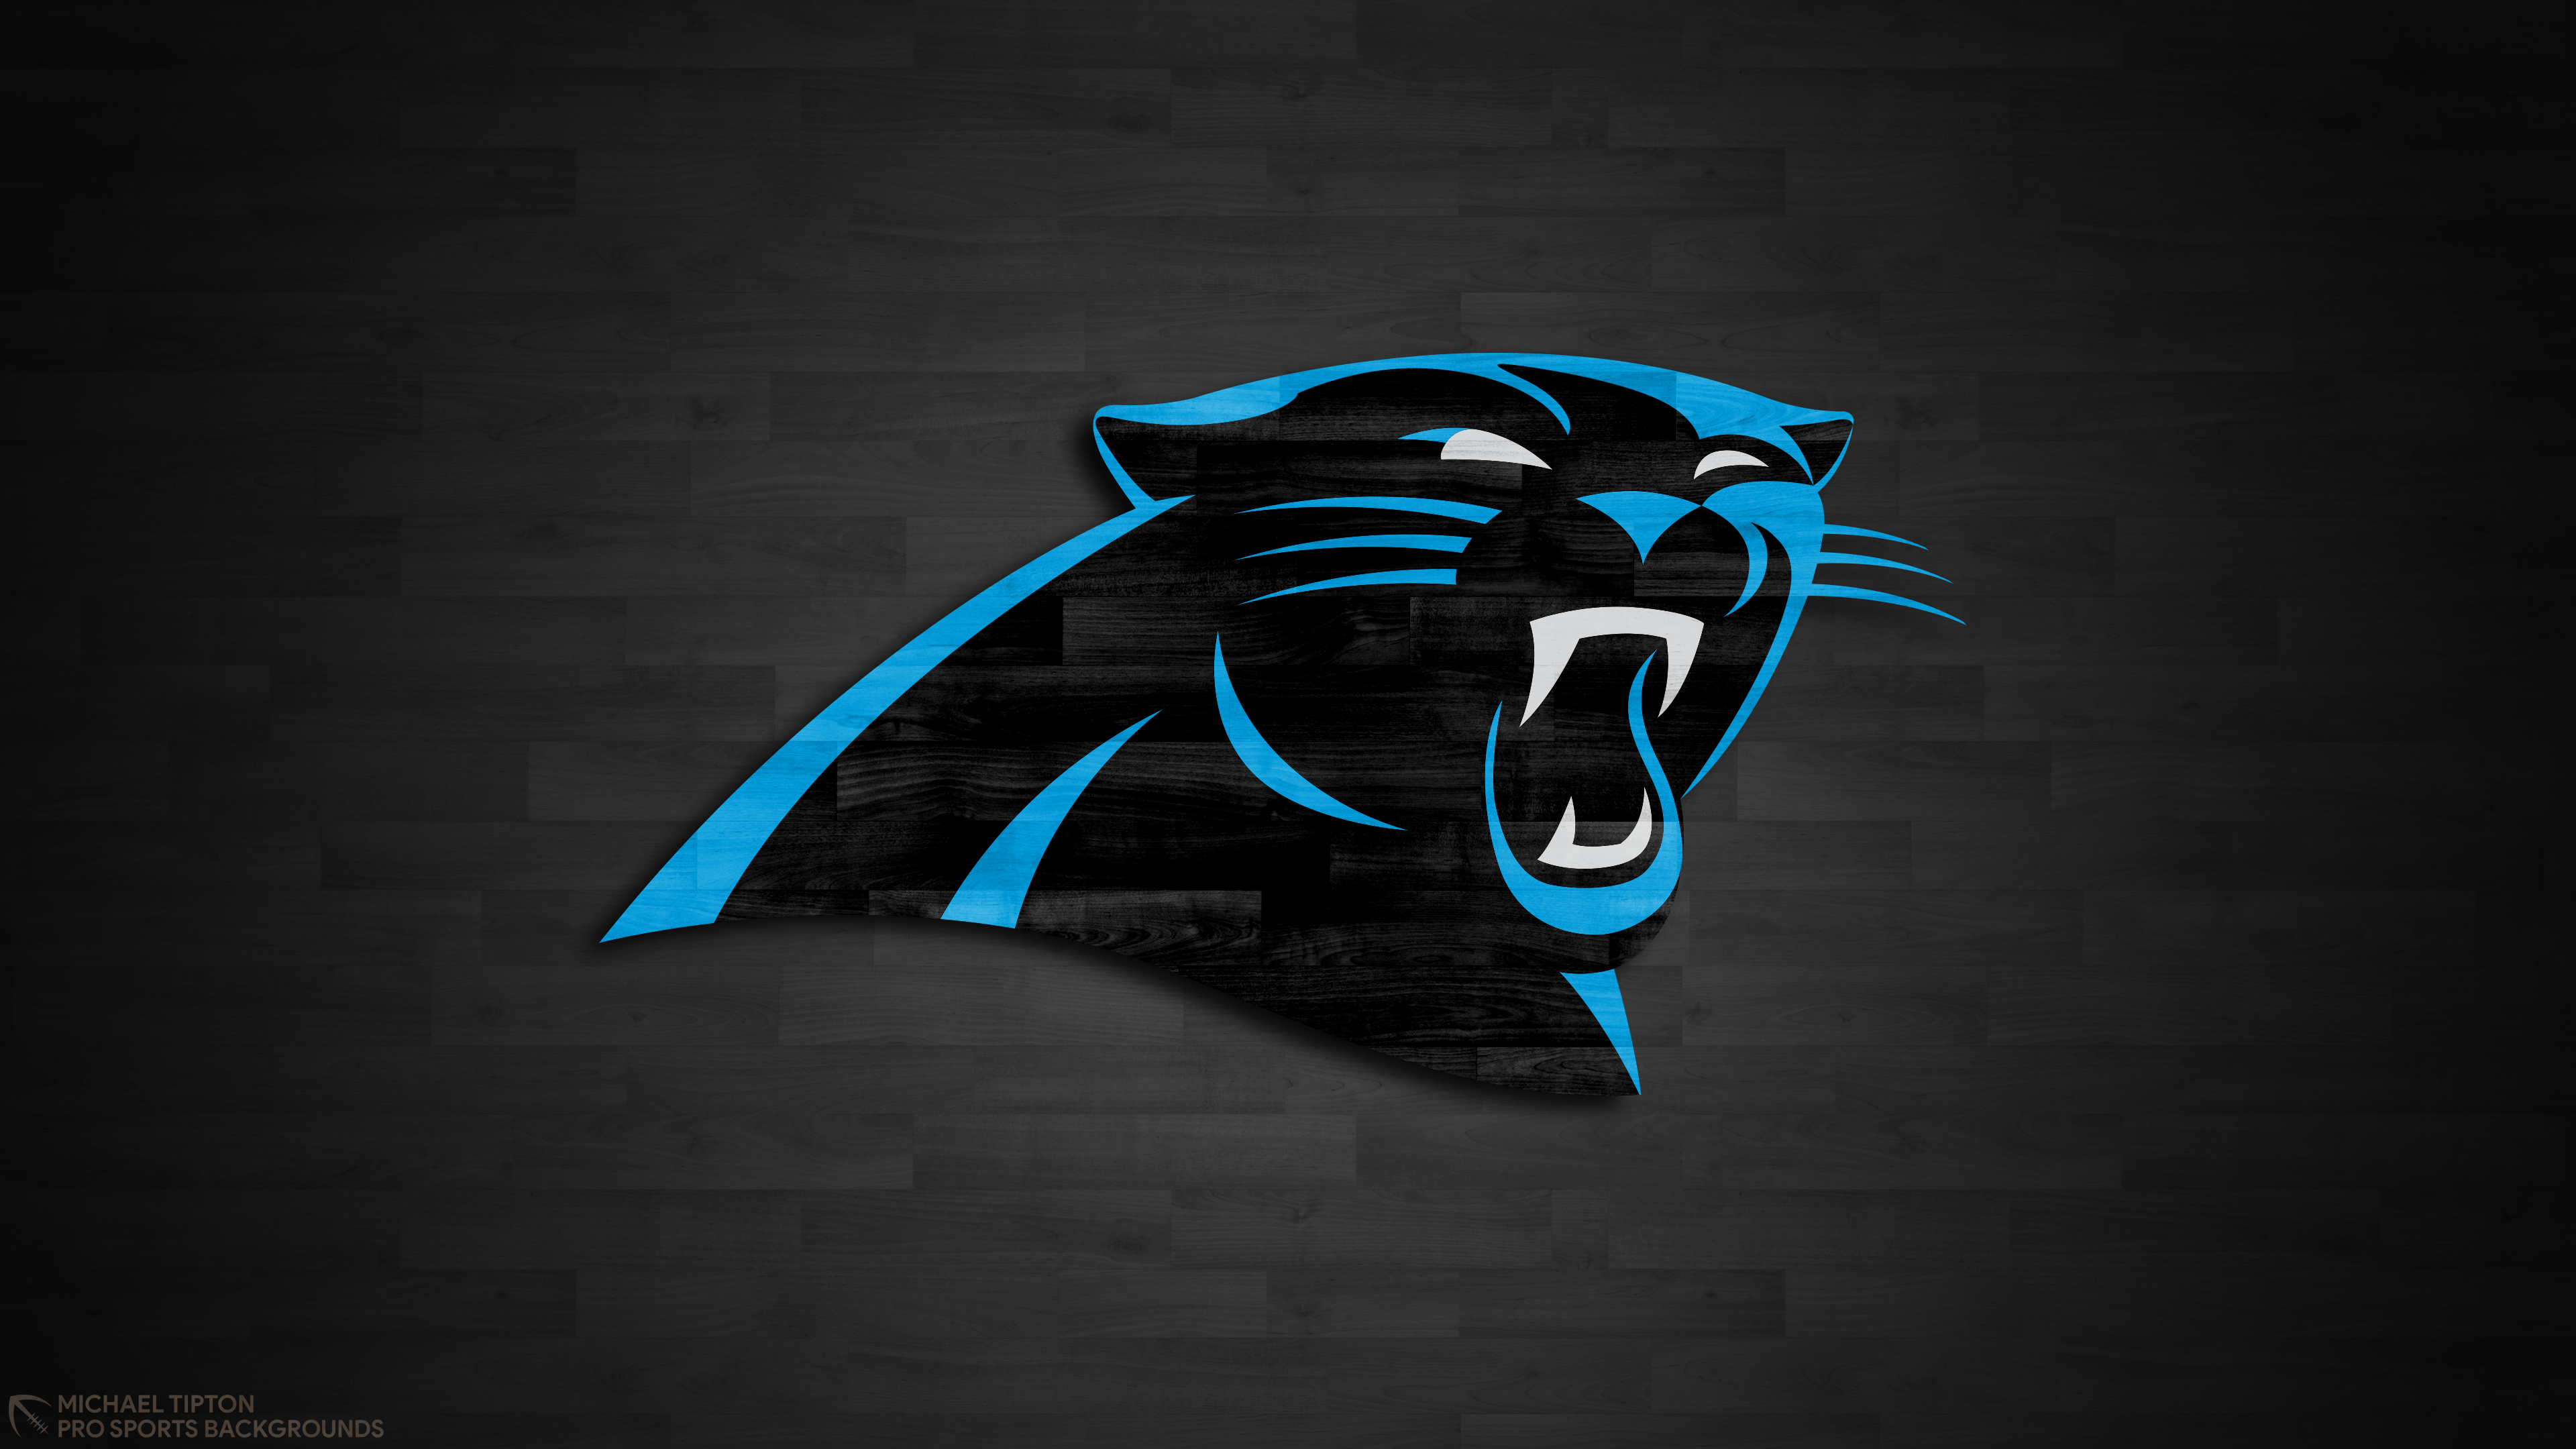 Carolina Panthers Wallpaper. Pro Sports Background